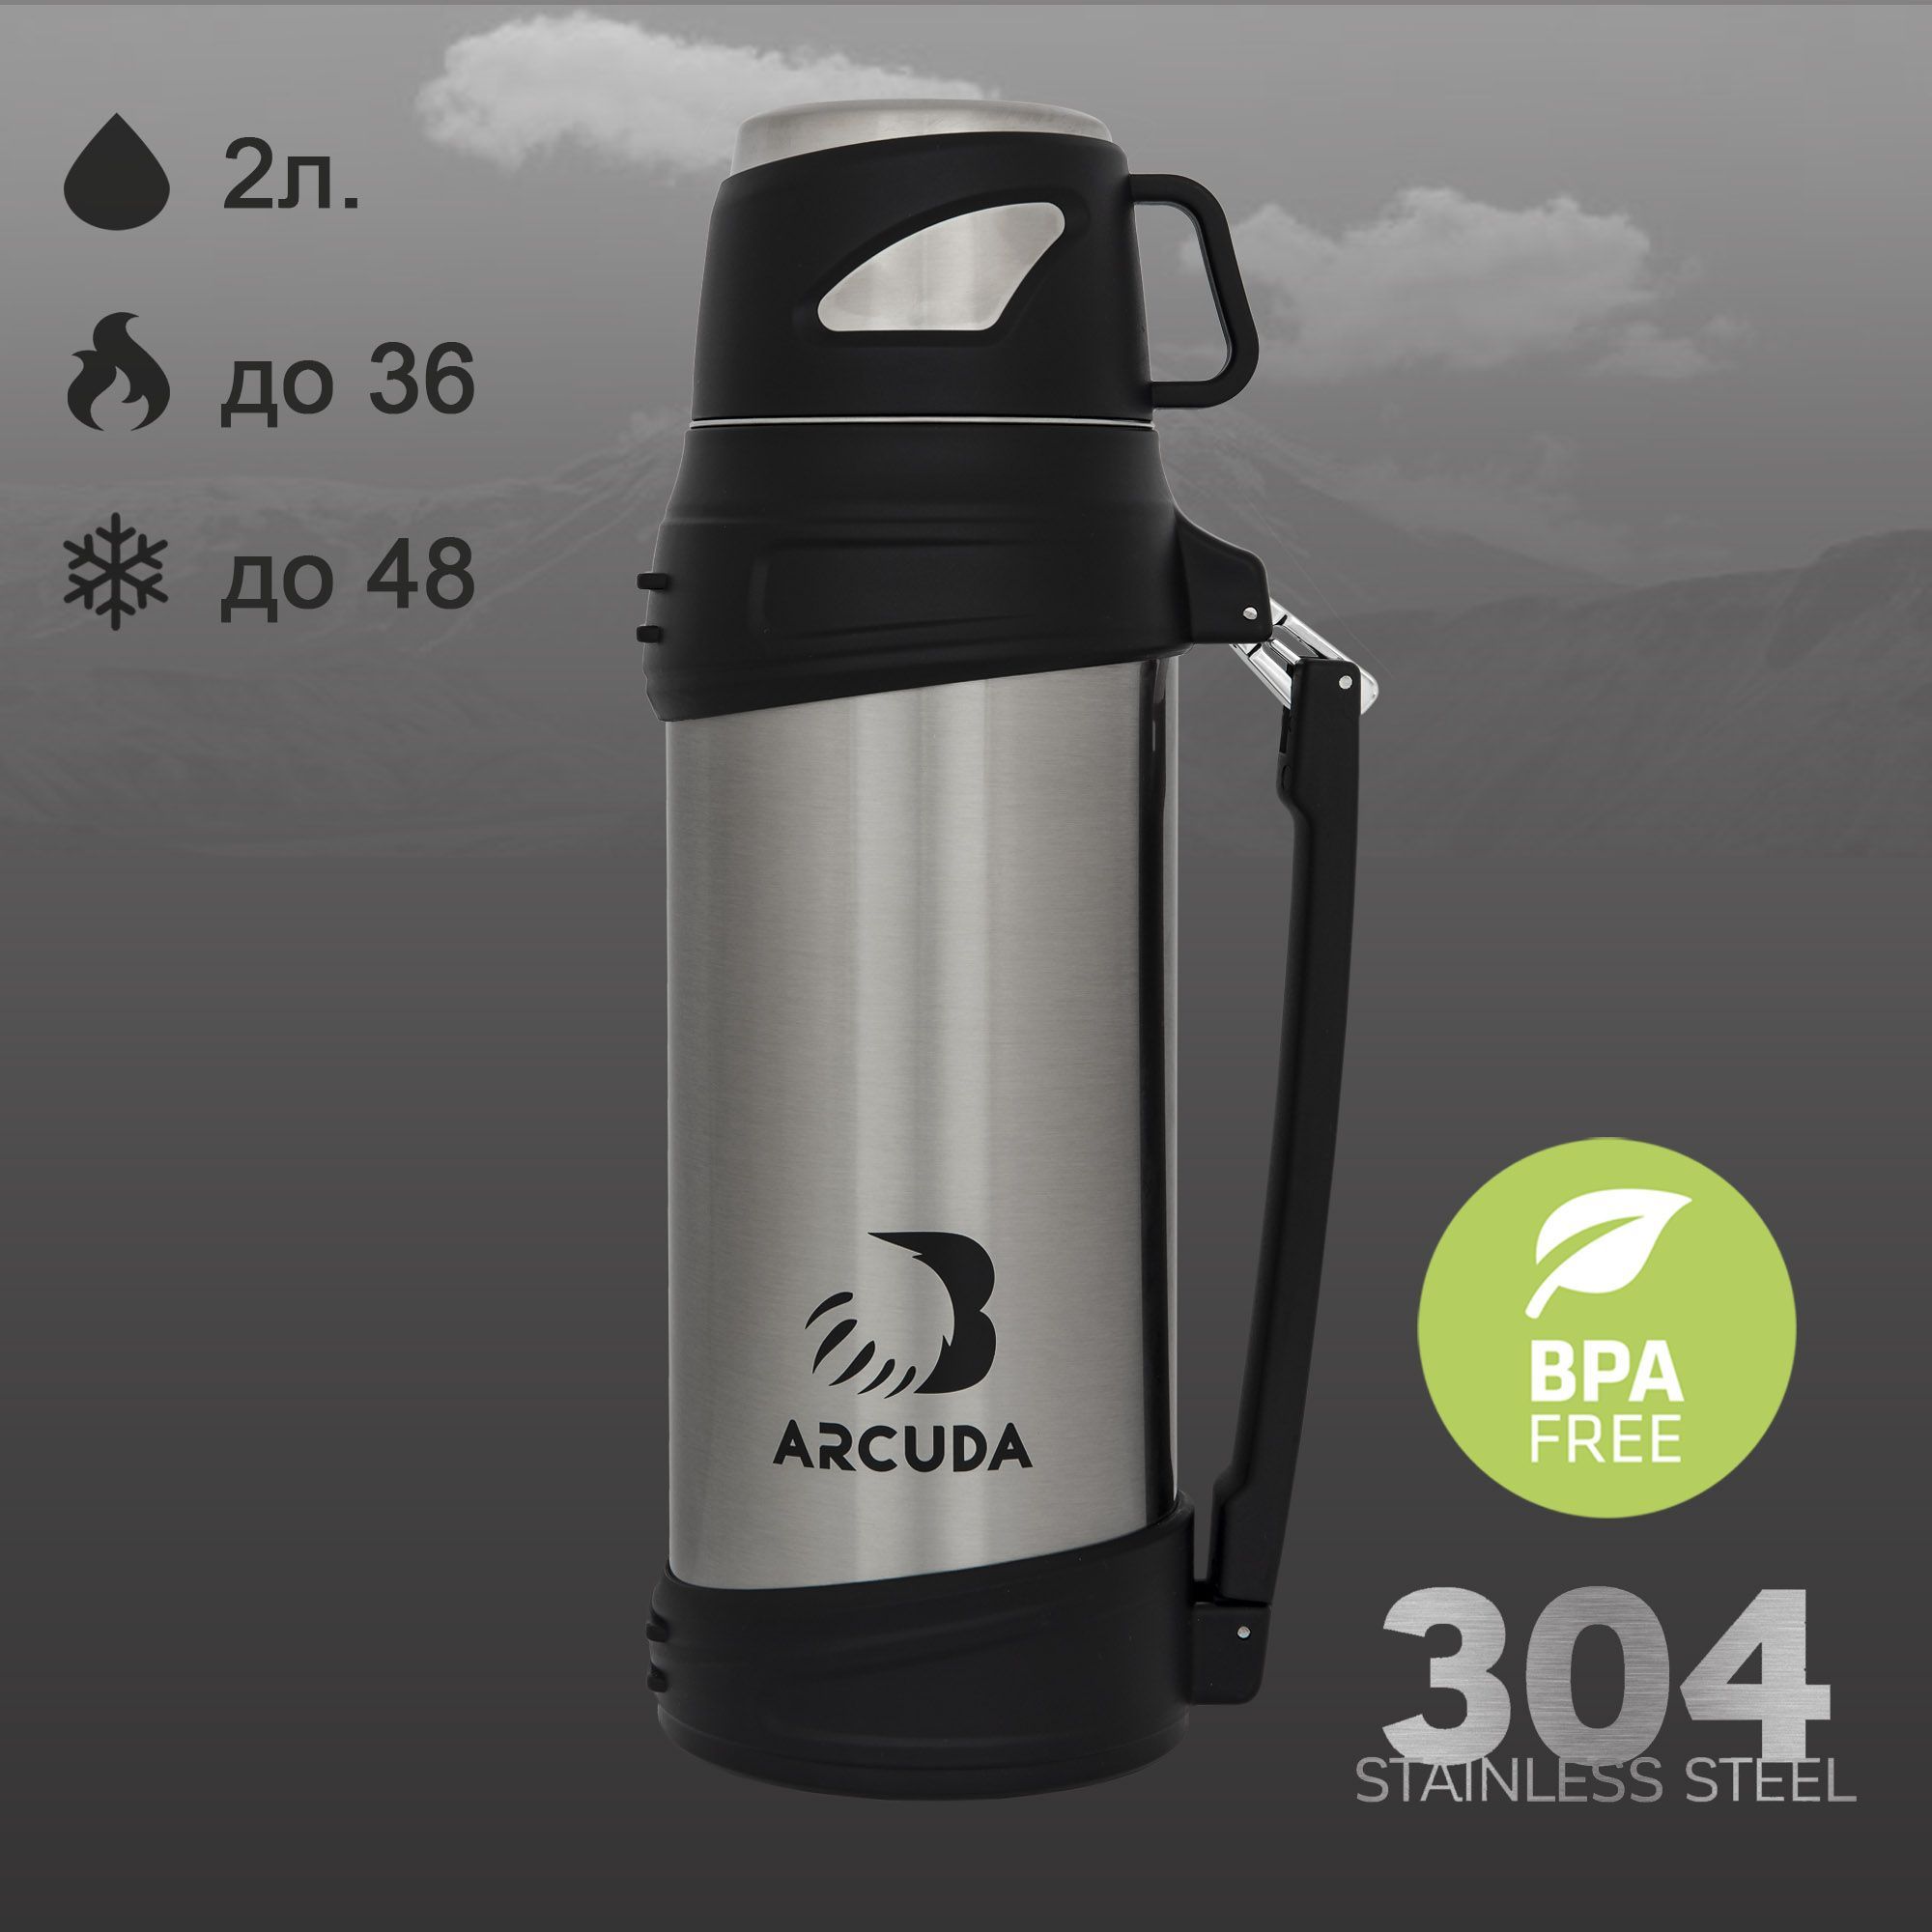 Термос ARCUDA ARC-9010 Army seria, 2 литра, стальной цвет